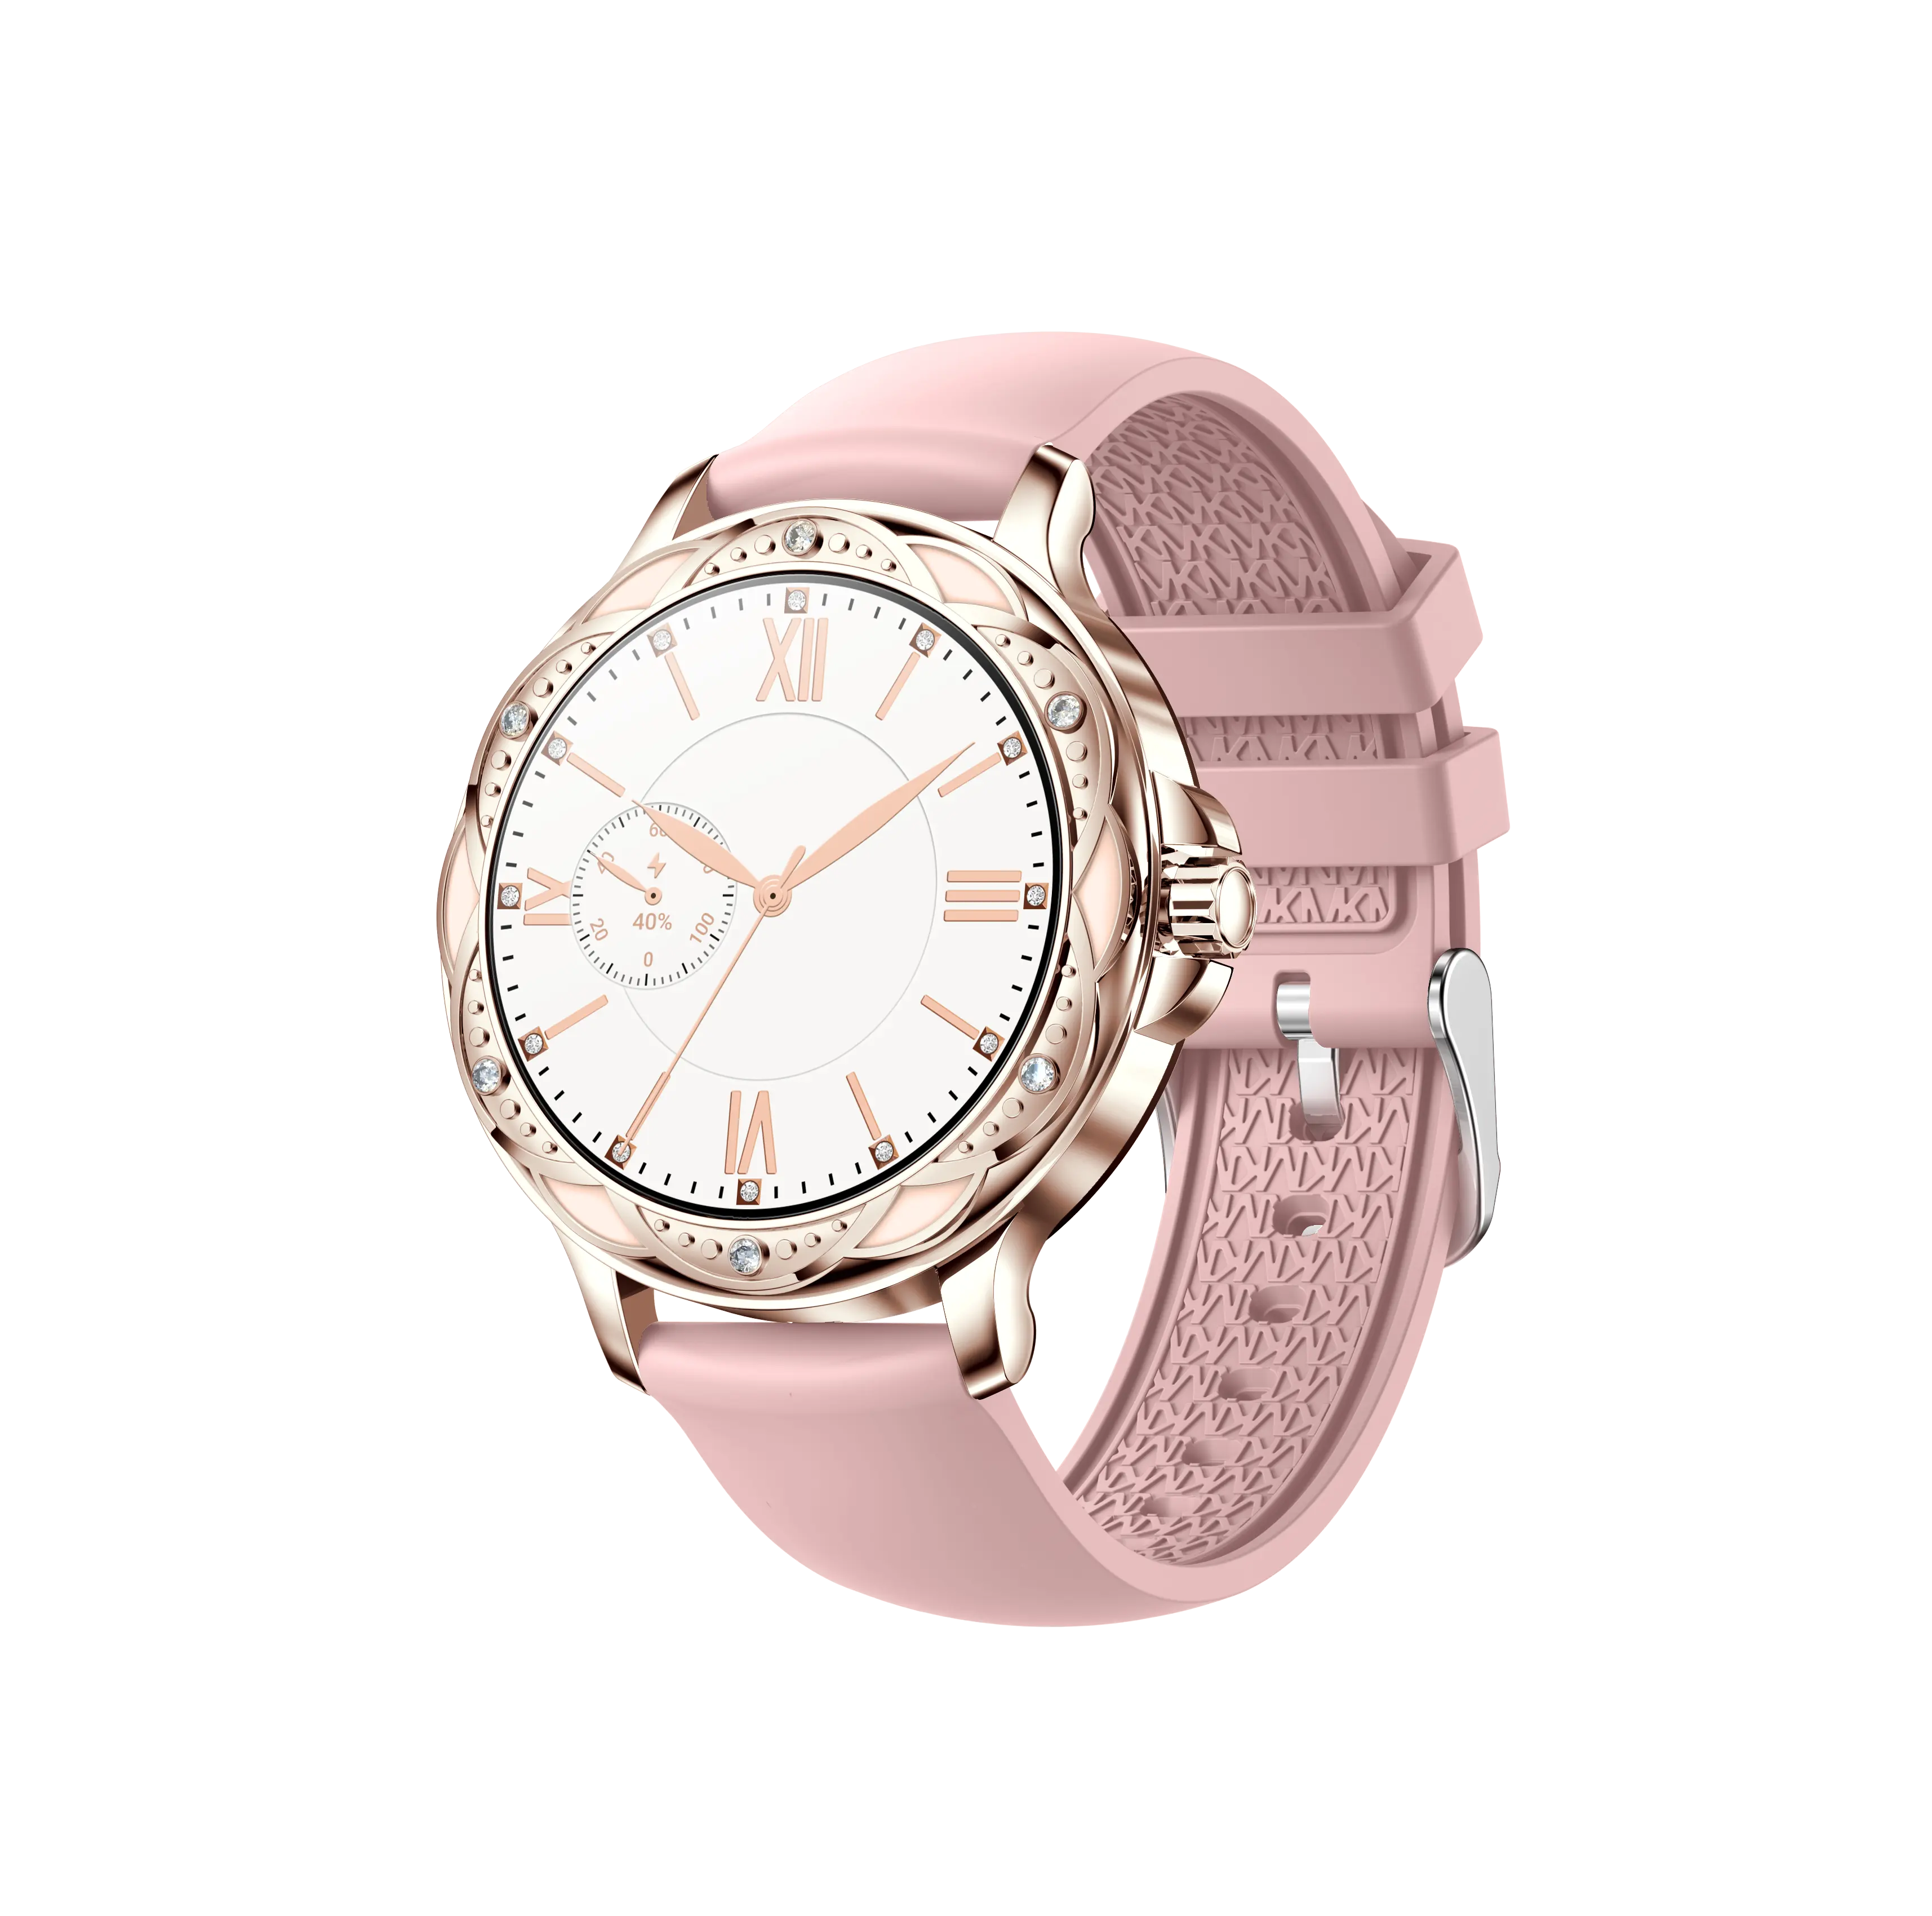 Samsung smart watch CF12 smart watch in acciaio inossidabile BT calling Smartwatch alla moda impermeabile per le donne